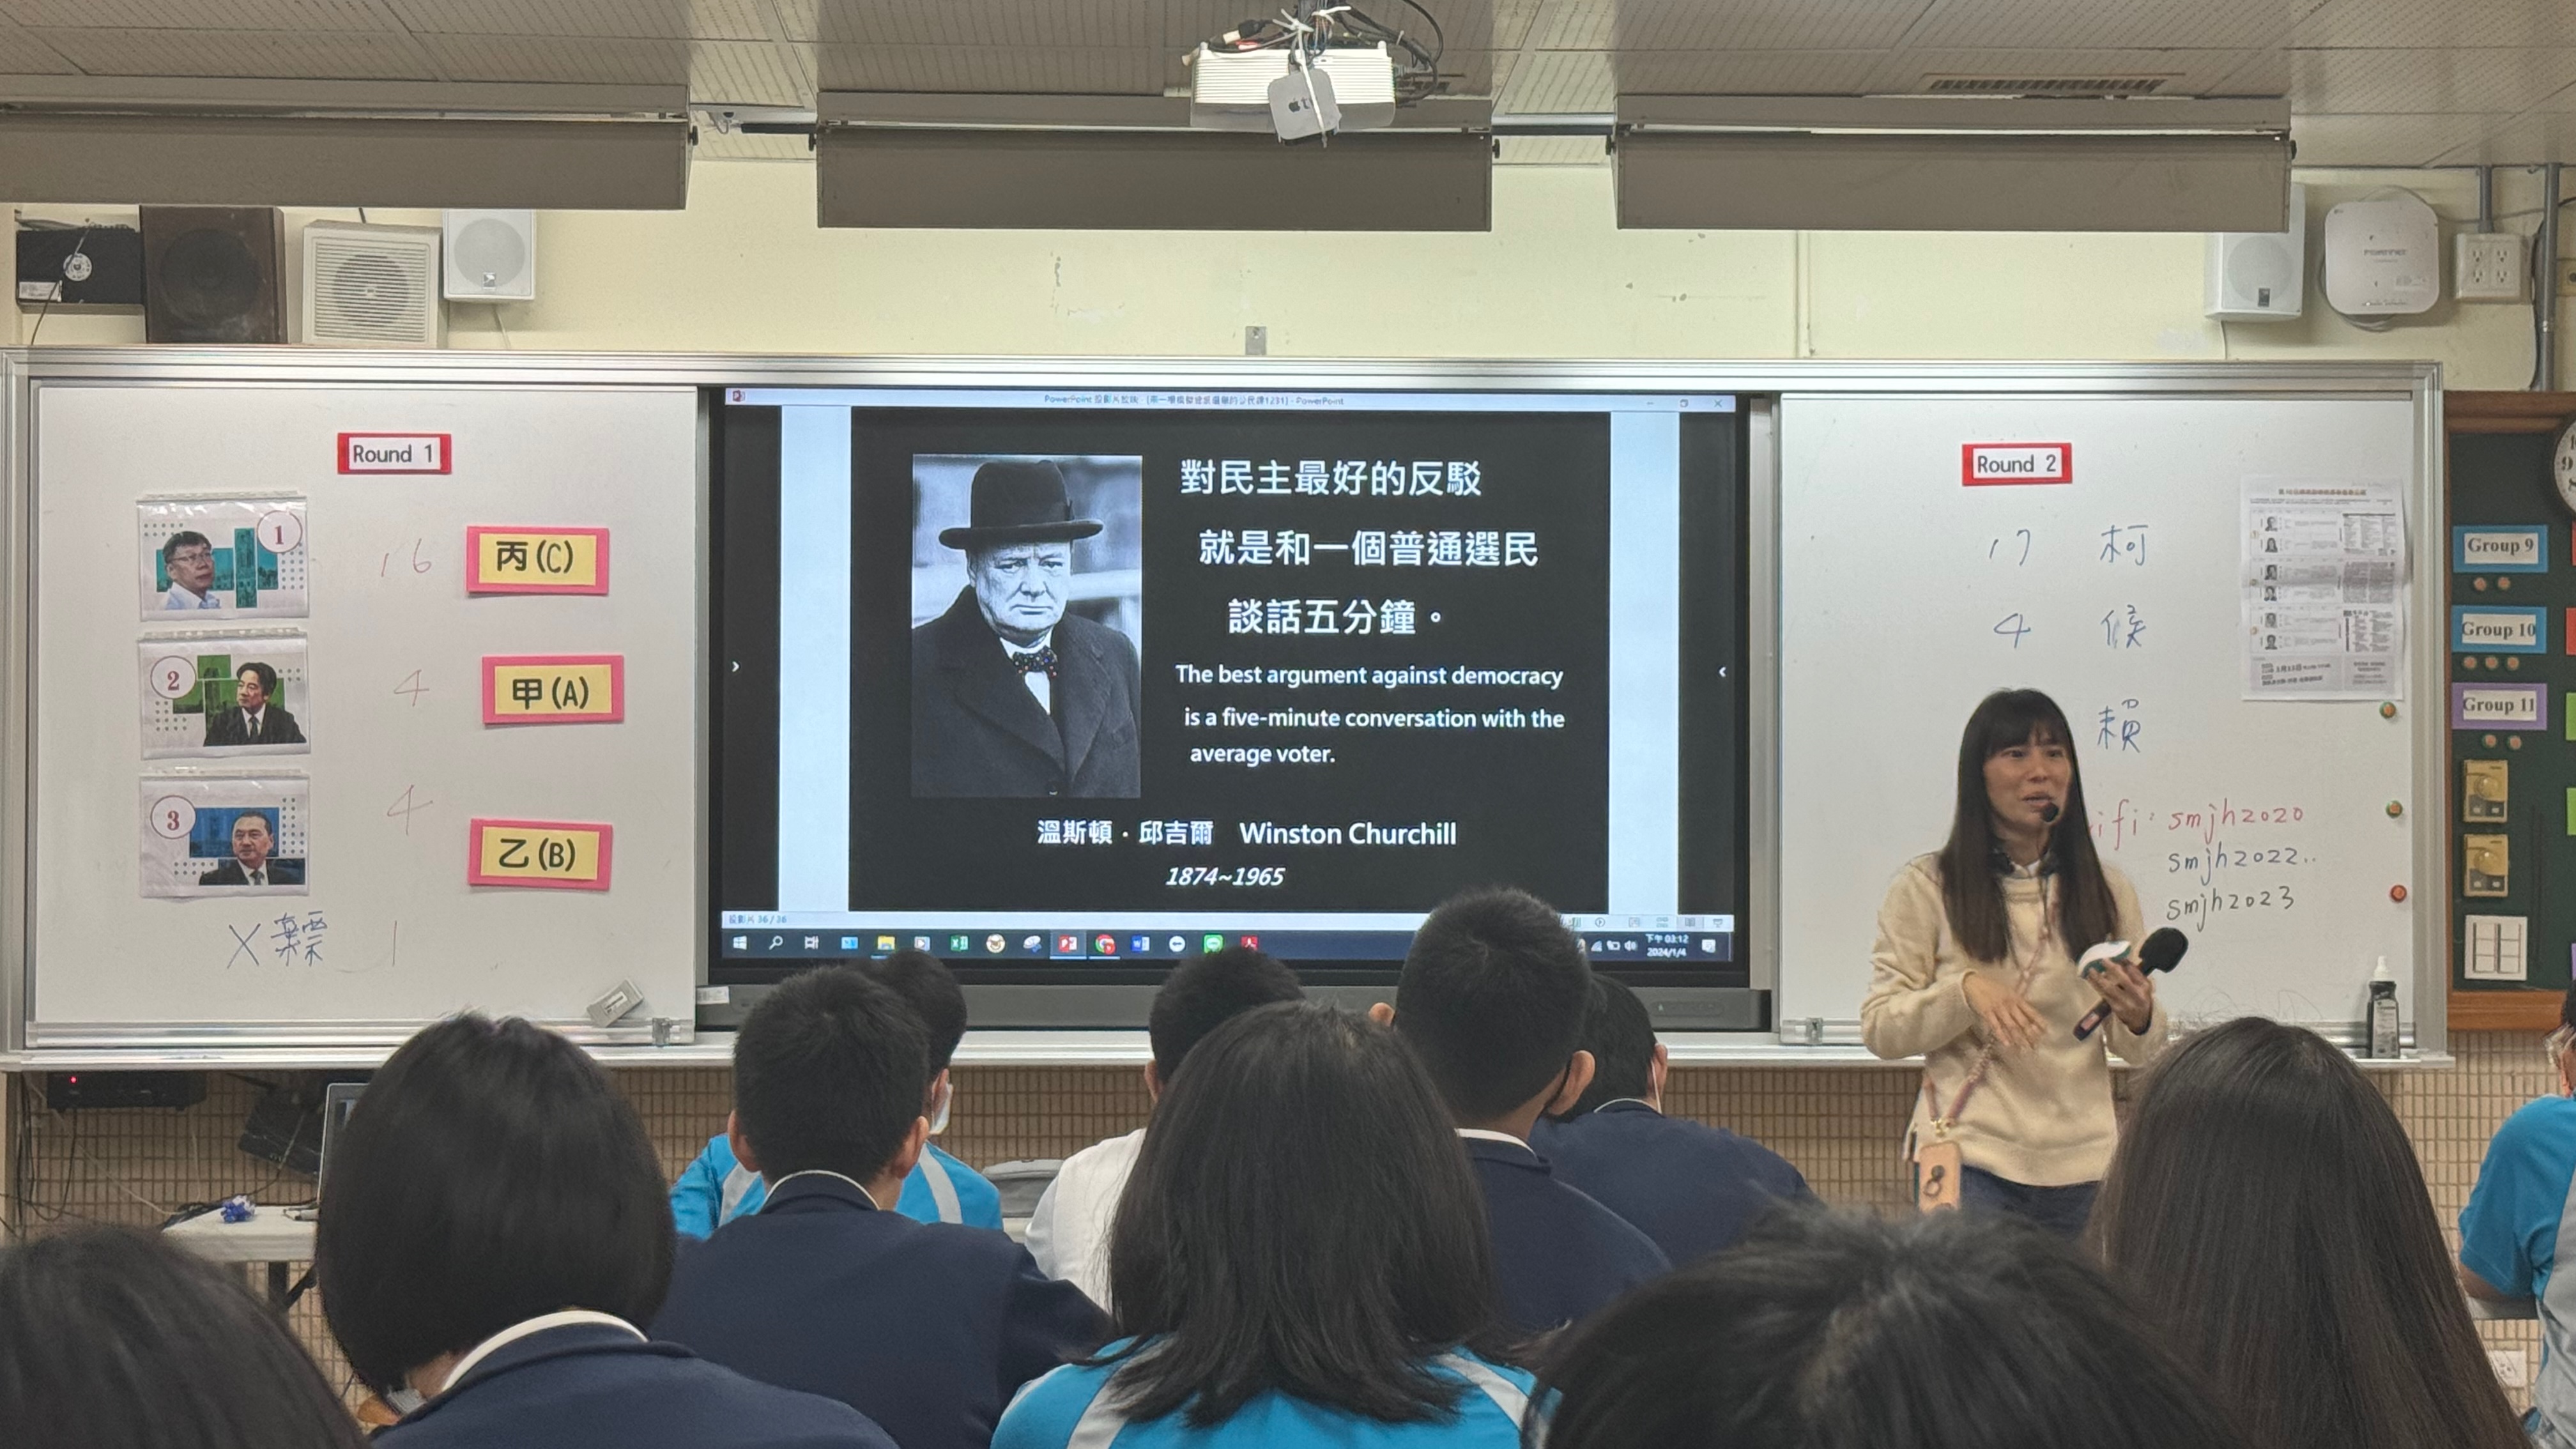 Yi Ting Jhang老师正在给学生们上民主课。